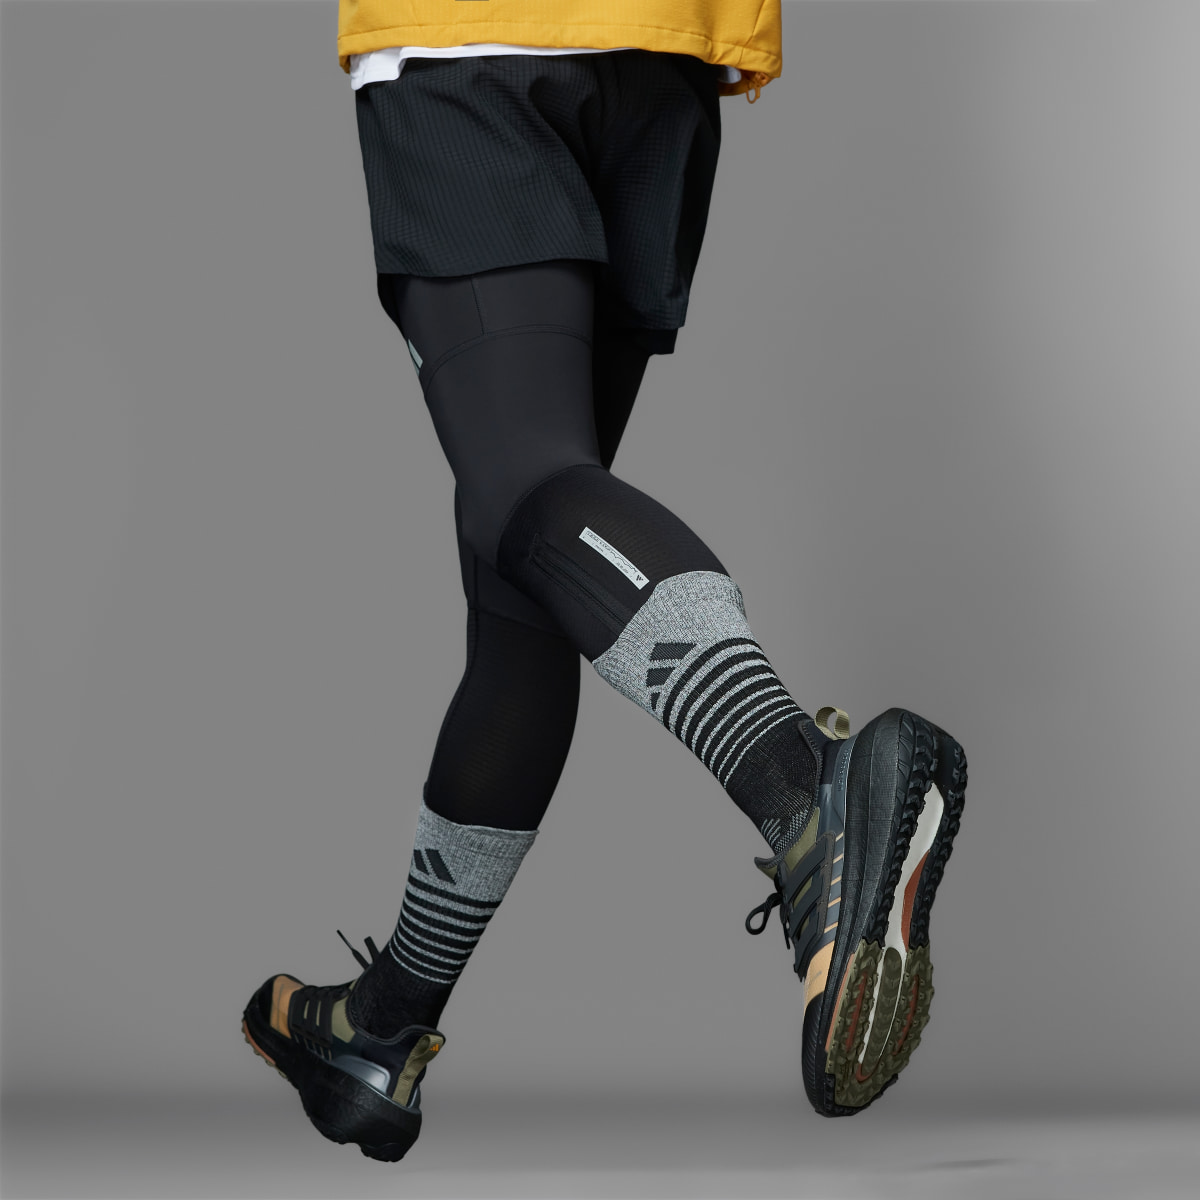 Adidas Ultraboost Light GORE-TEX Running Shoes. 4